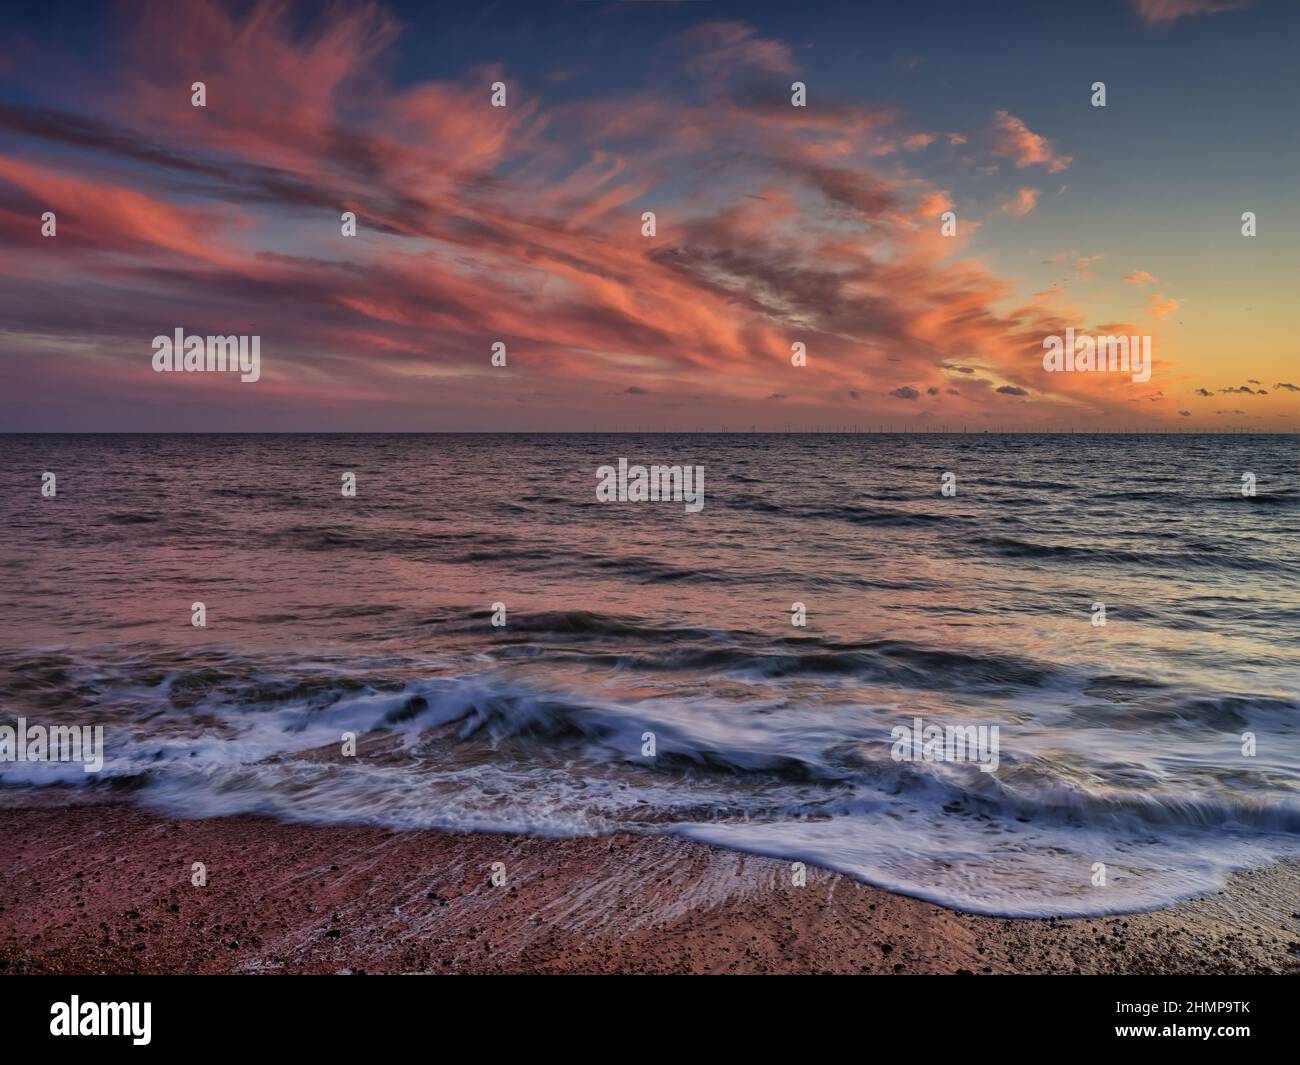 Eine minimalistische Aufnahme, die den Sonnenuntergang nach dem Sonnenuntergang und die Wellen am Brighton Beach für ein ultimatives ruhiges Gefühl darstellt. Stockfoto